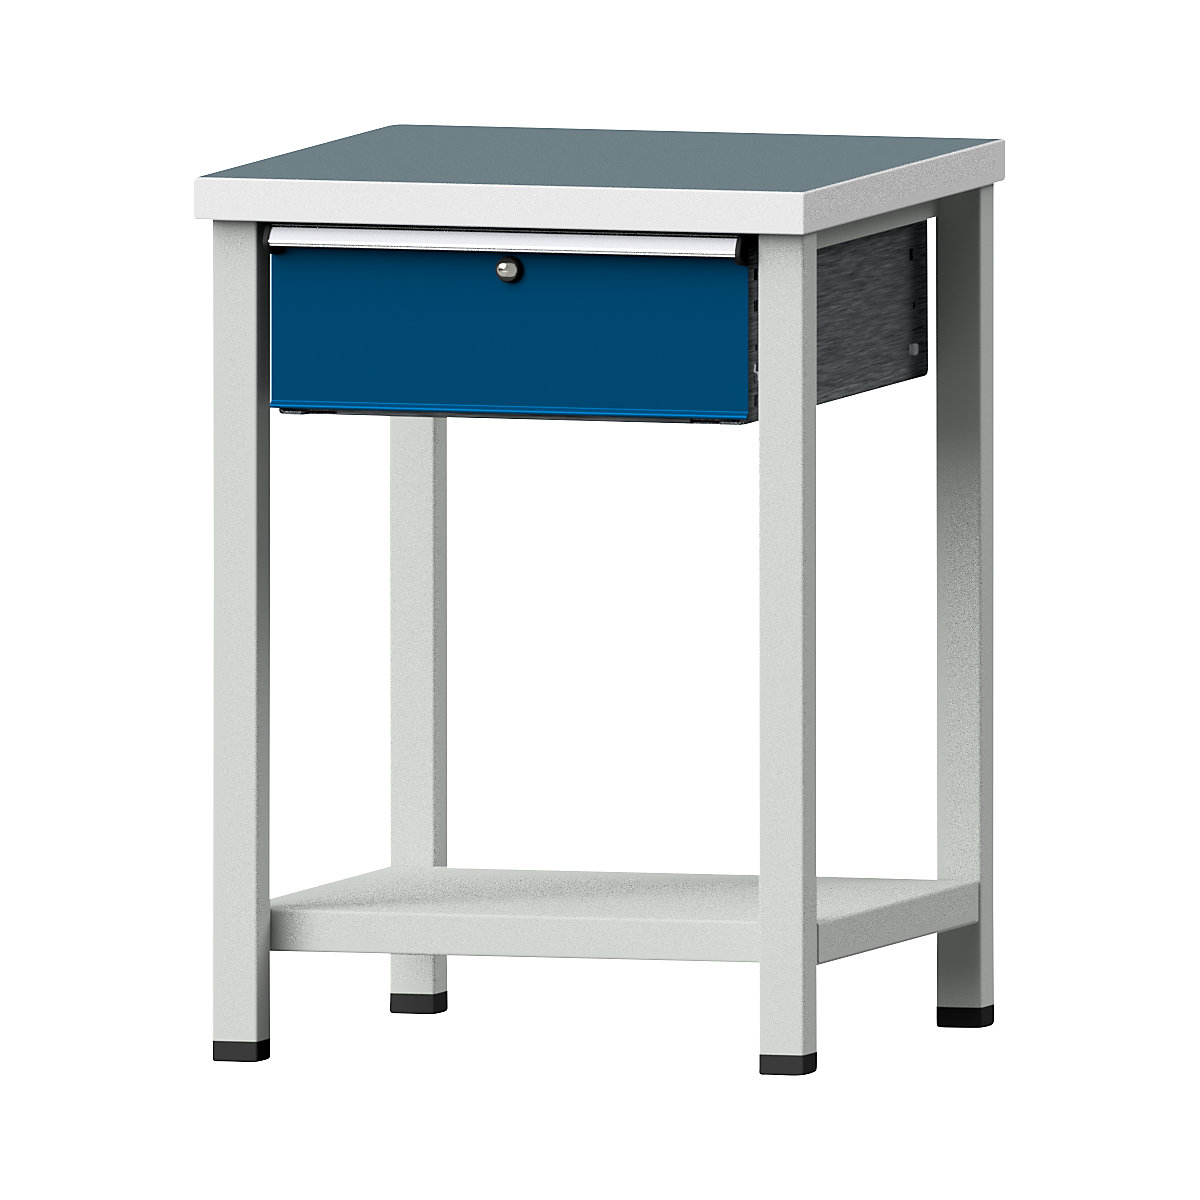 Kompaktowy stół warsztatowy – ANKE, szer. x głęb. 605 x 650 mm, 1 szuflada, stacjonarny, płyta uniwersalna-3